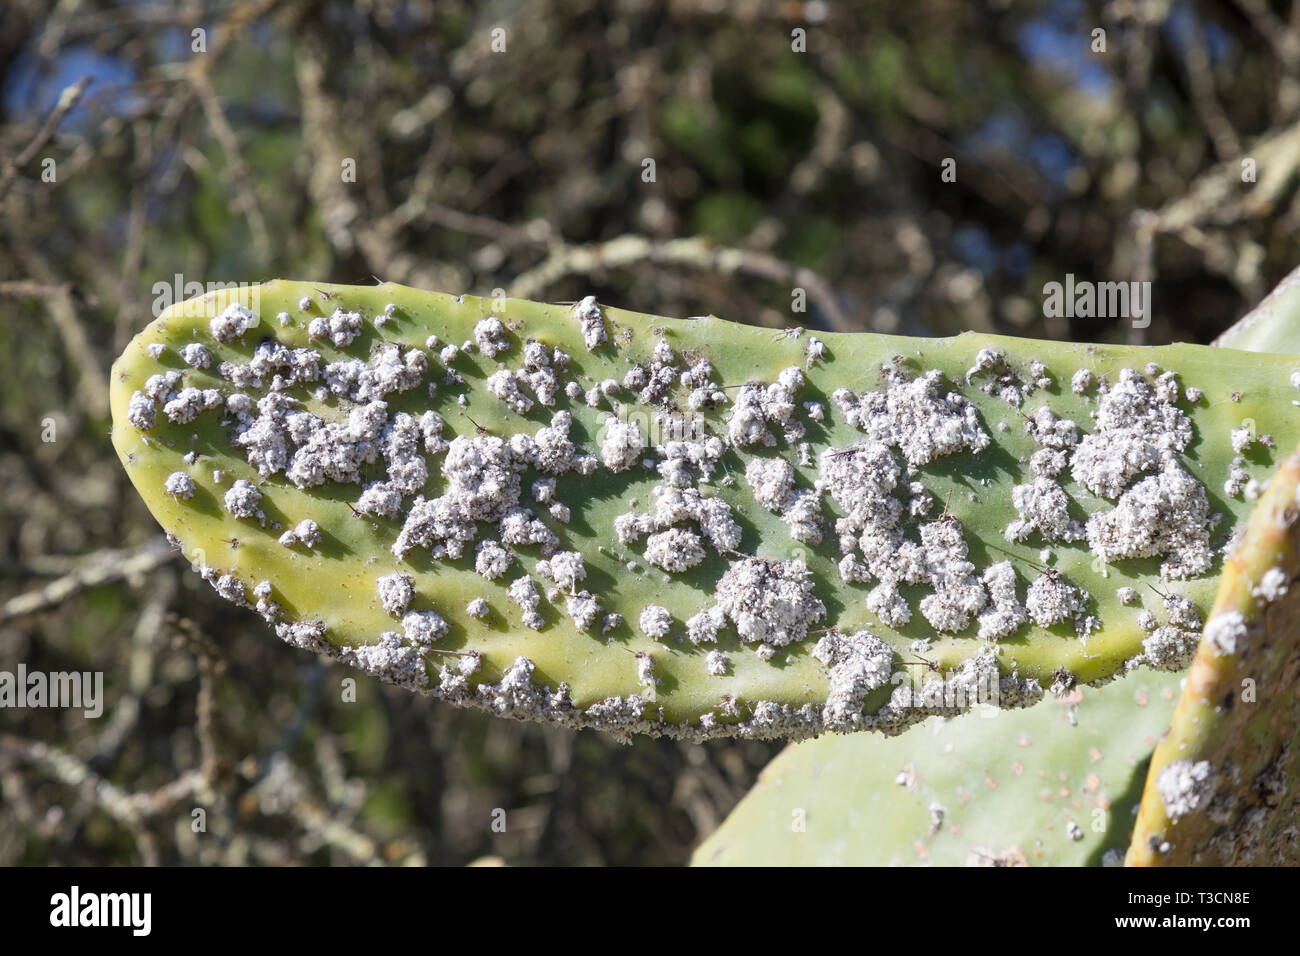 El control biológico de las especies de Opuntia cactus en Sudáfrica mediante la introducción de la cochinilla Dactylopius opuntia, colonia compuesto de cera-cubiertos Foto de stock